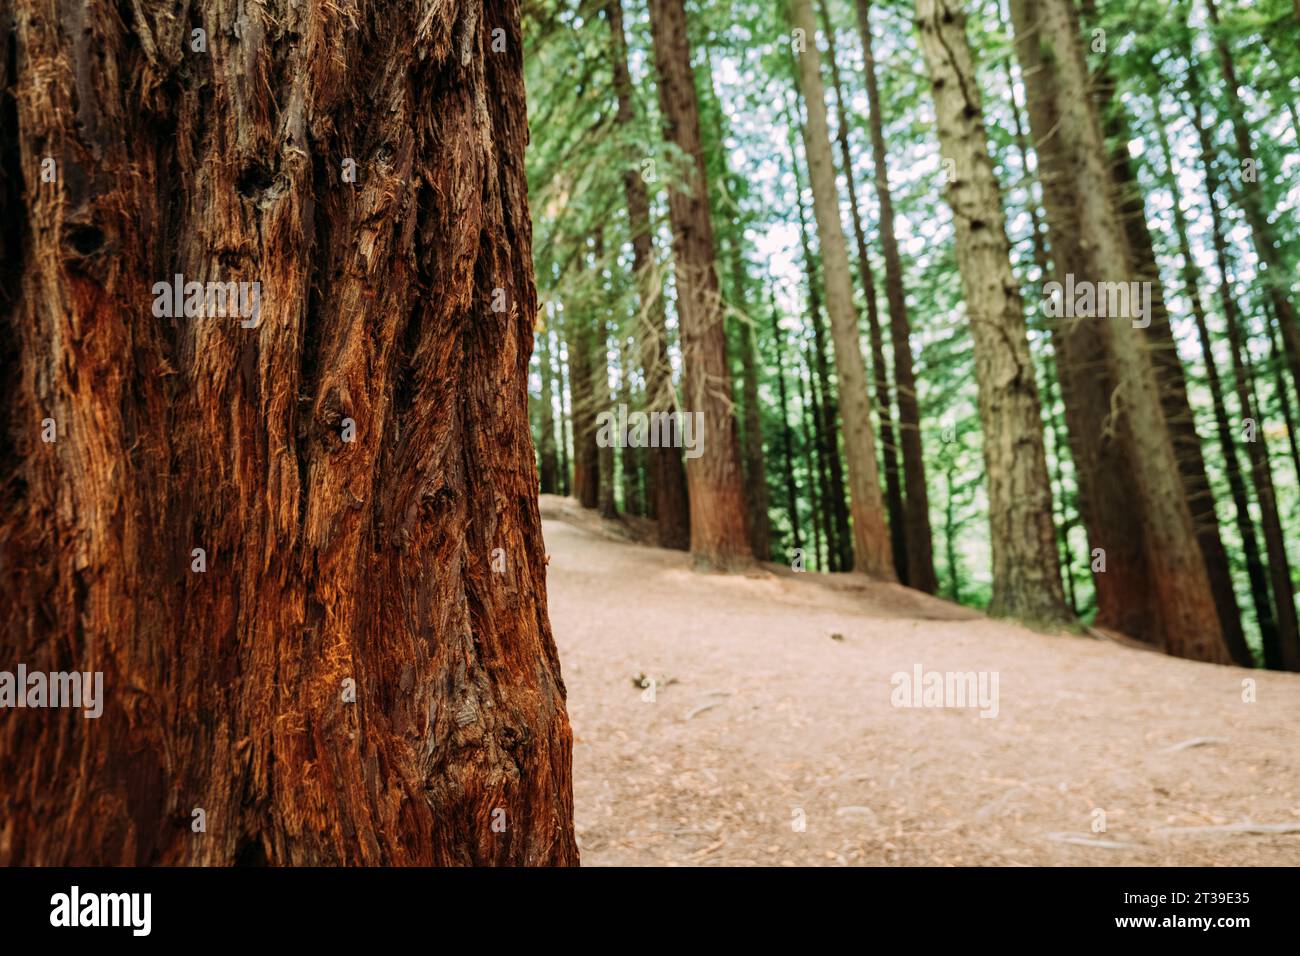 Gros plan de tronc d'arbre contre feuillage vert poussant dans la forêt, Cabezon de la Sal, Cantabrie, Espagne Banque D'Images